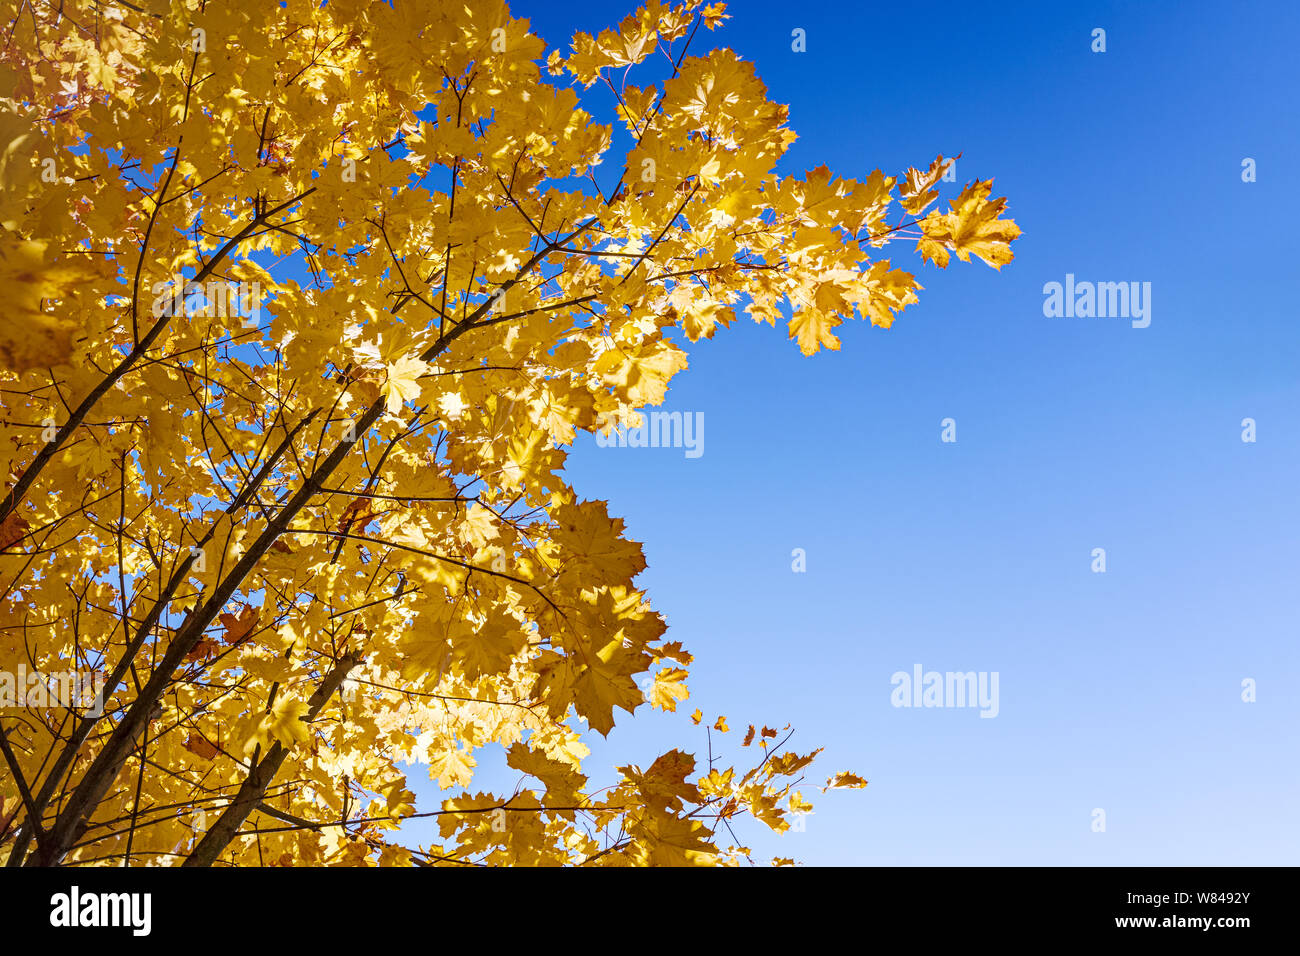 Maple treetops secco con foglie di oro brillante contro il cielo blu sullo sfondo. fondo closeup view Foto Stock